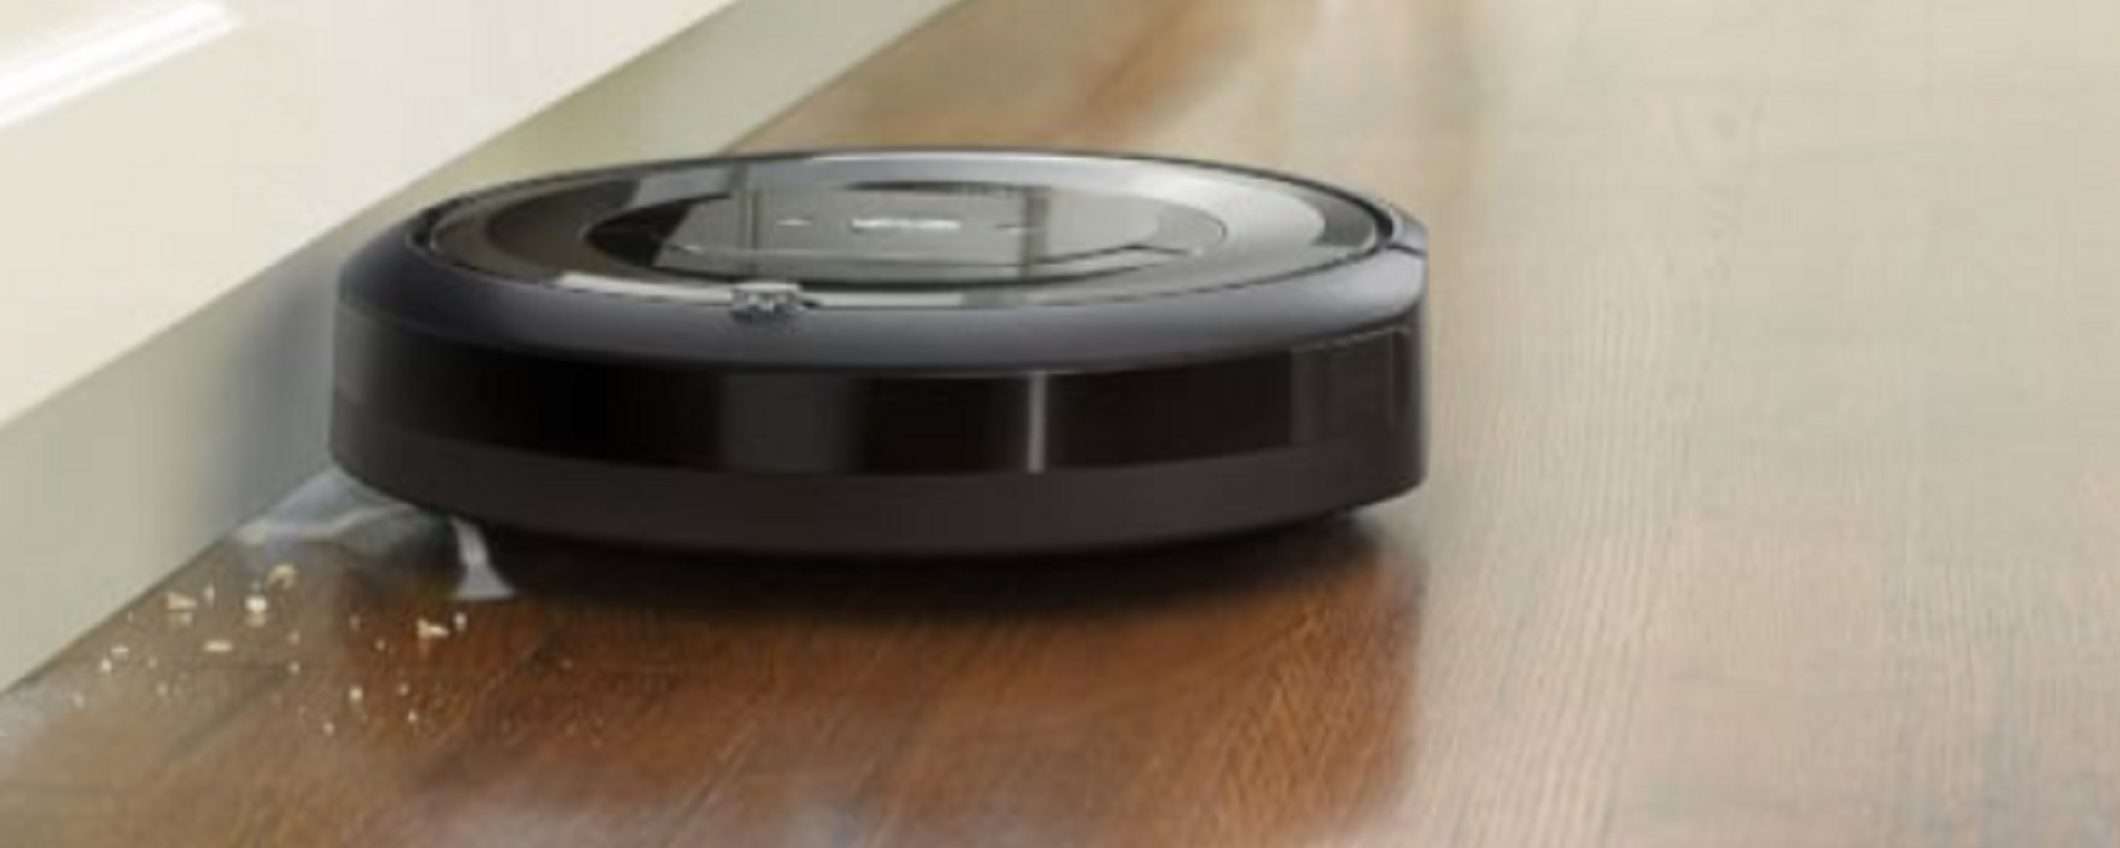 Robot aspirapolvere Roomba e5 SCONTATISSIMO su Monclick